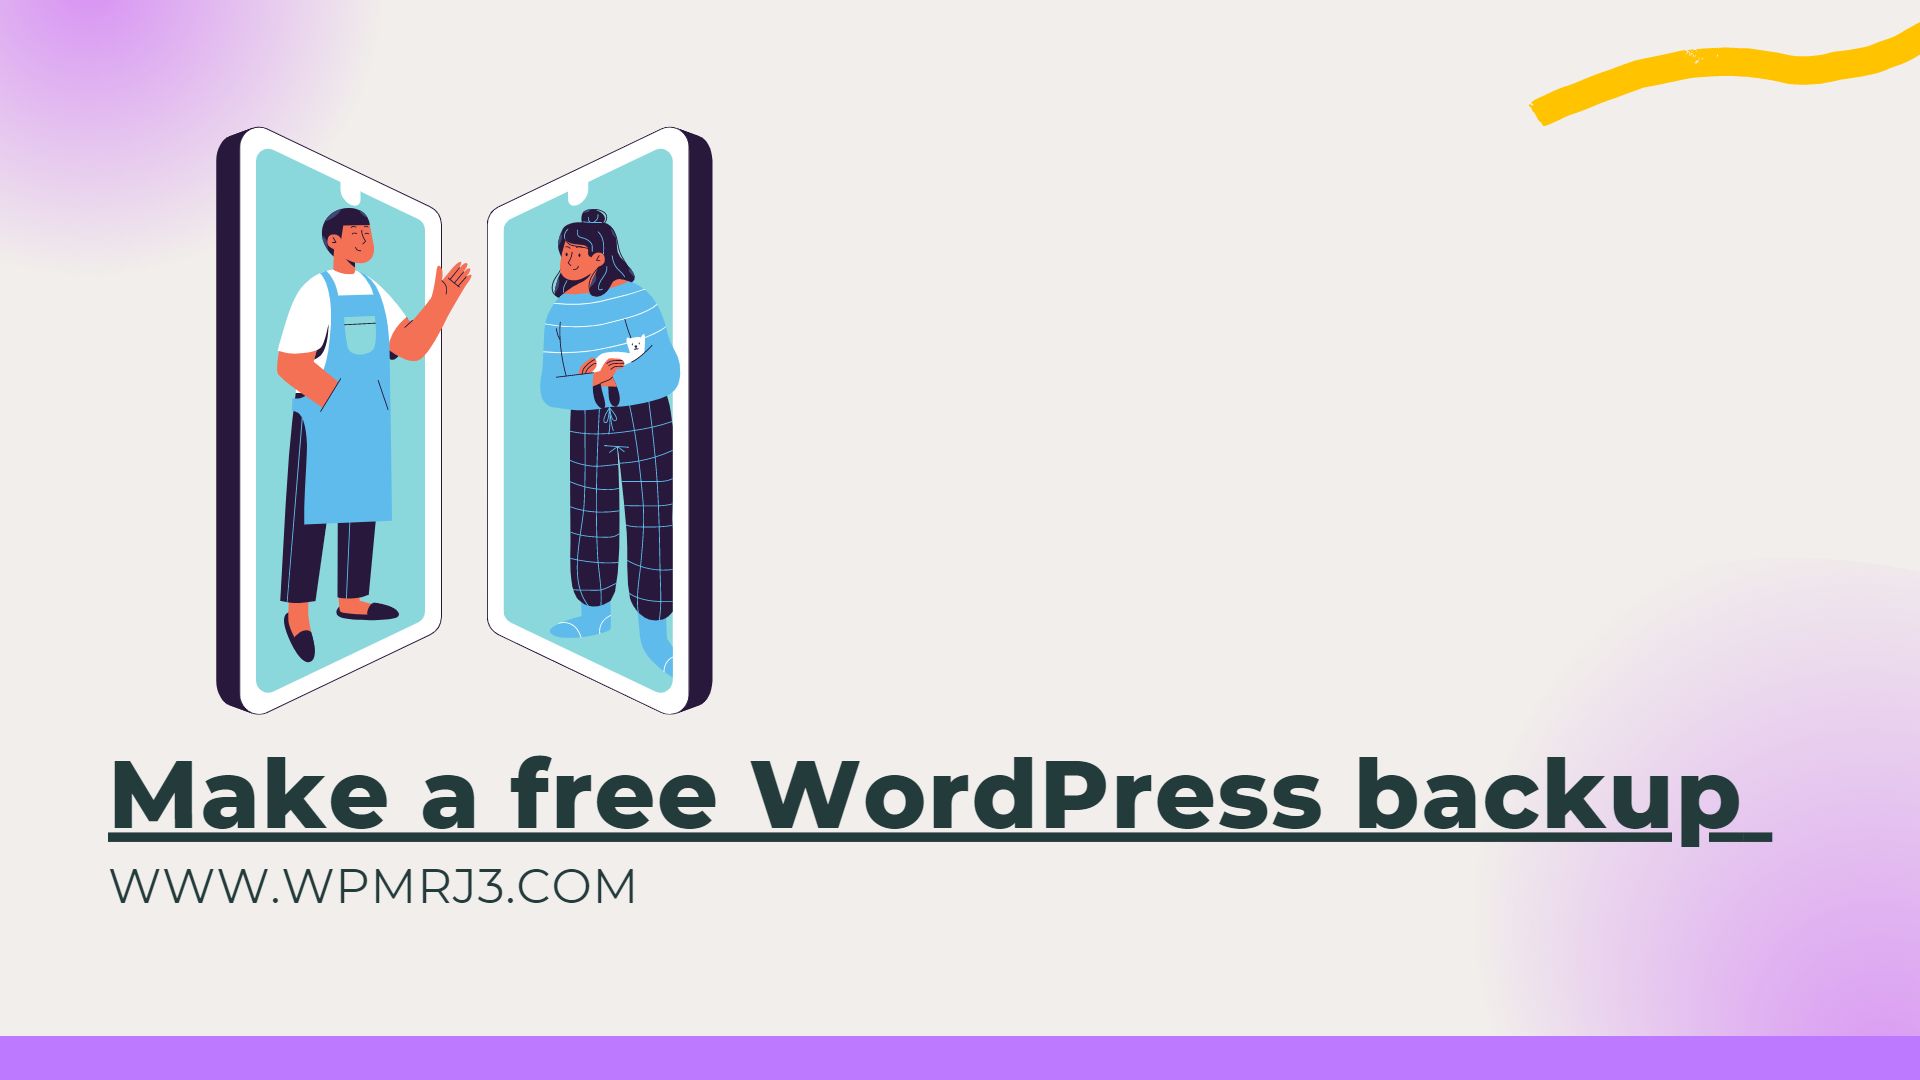 Make a free WordPress backup